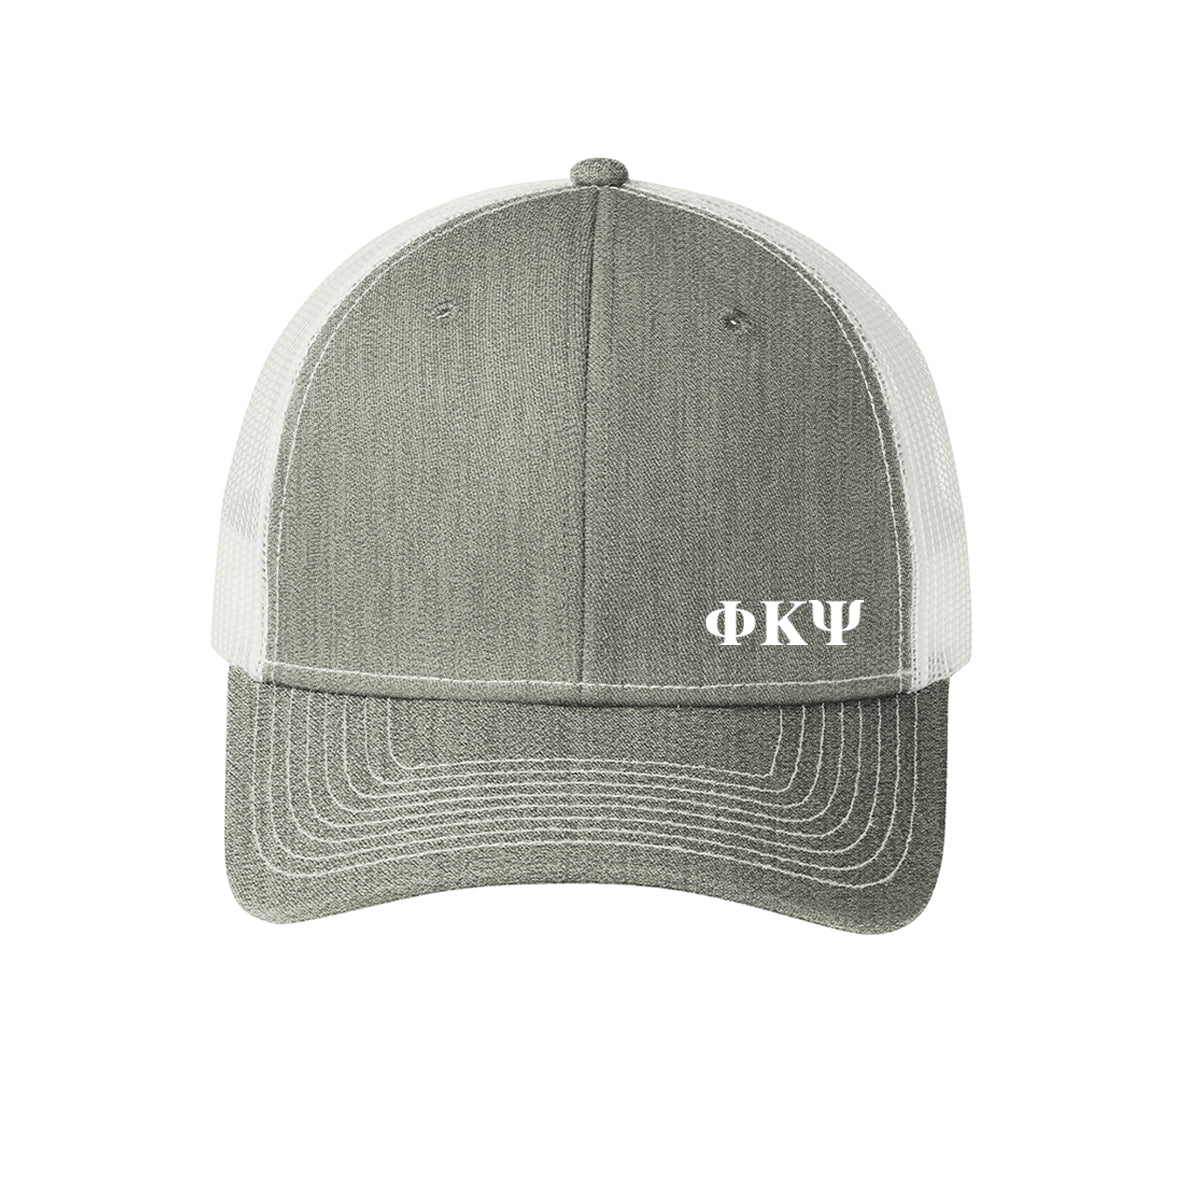 New! Phi Psi Grey Greek Letter Trucker Hat